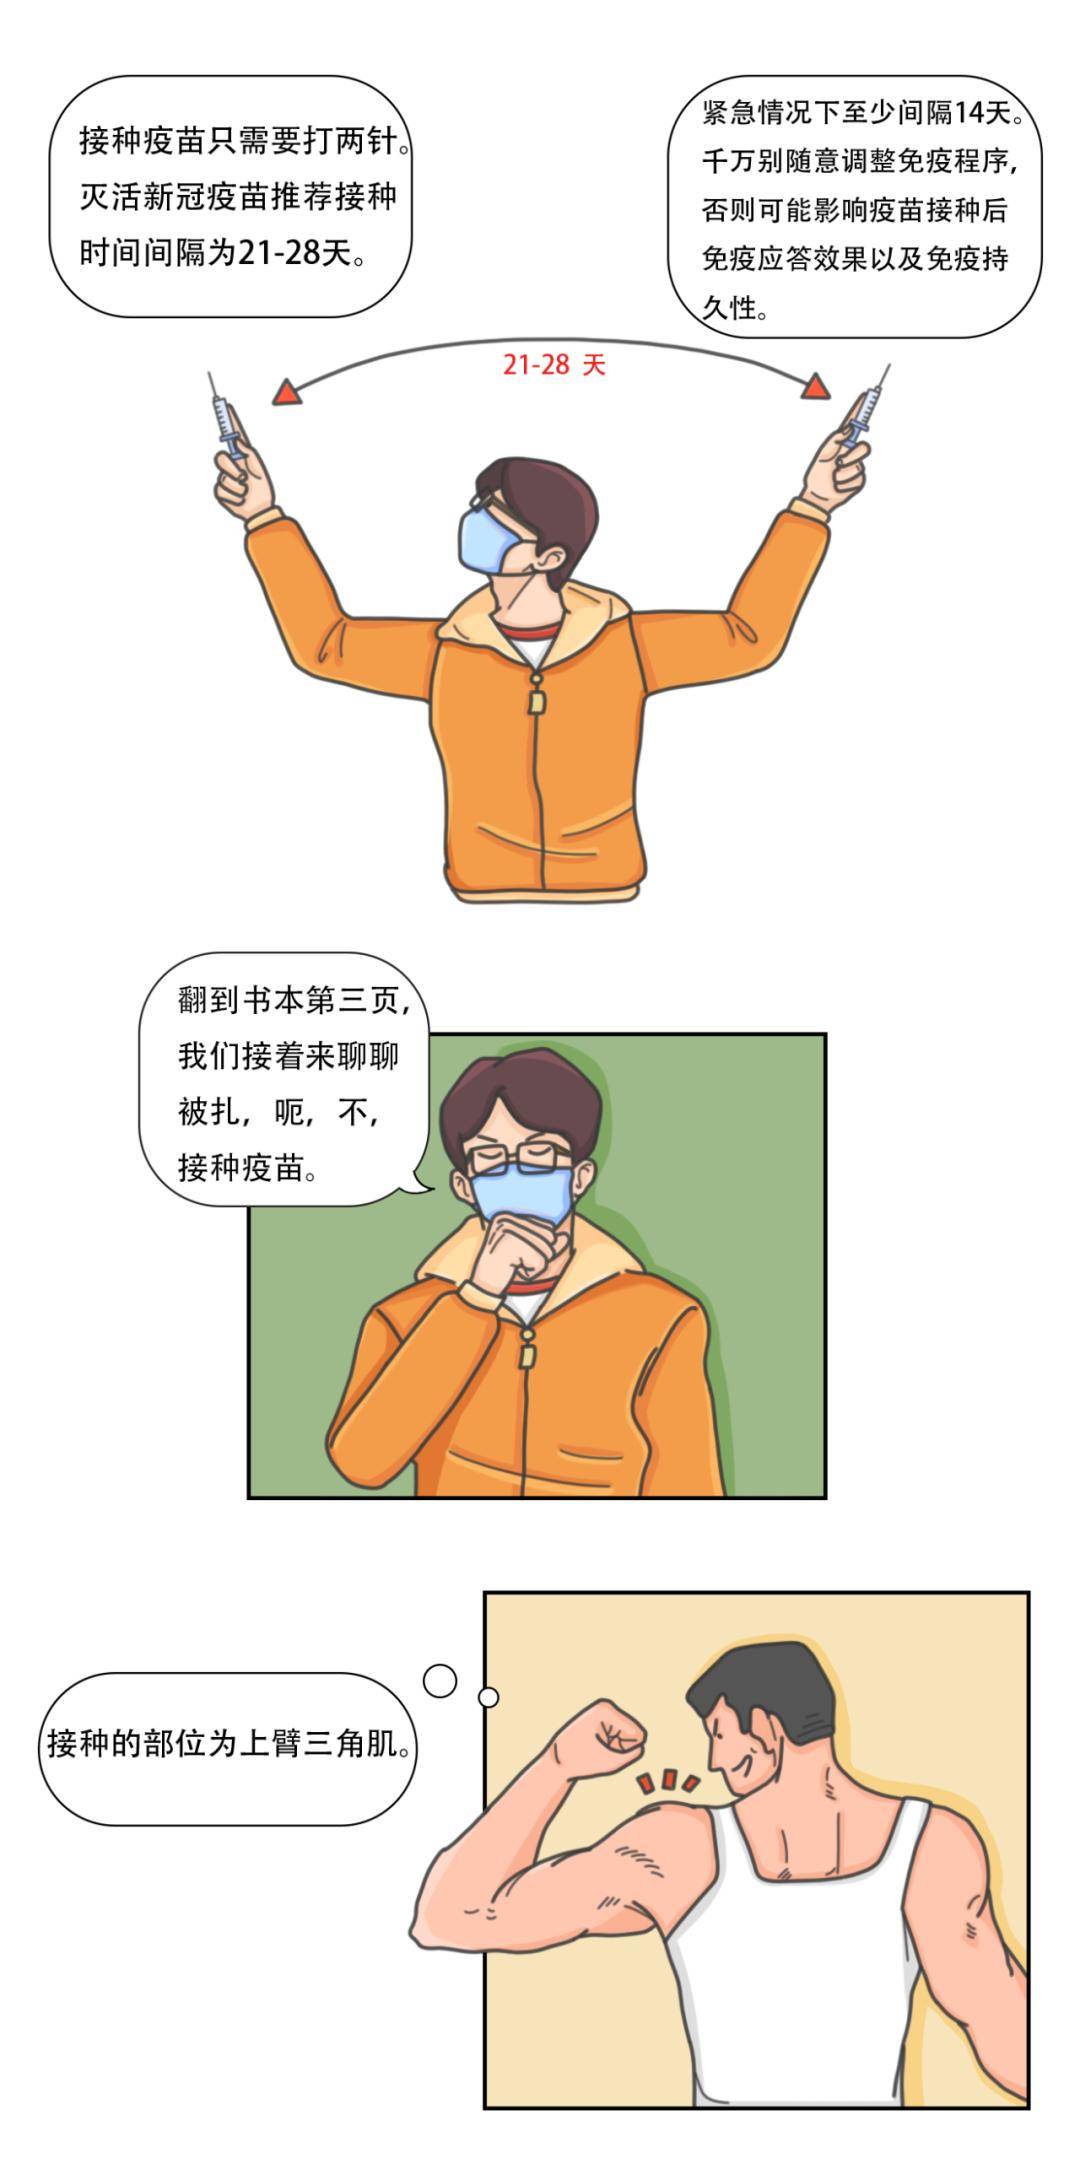 香蕉一本大道中文在线_六漫画_啵乐